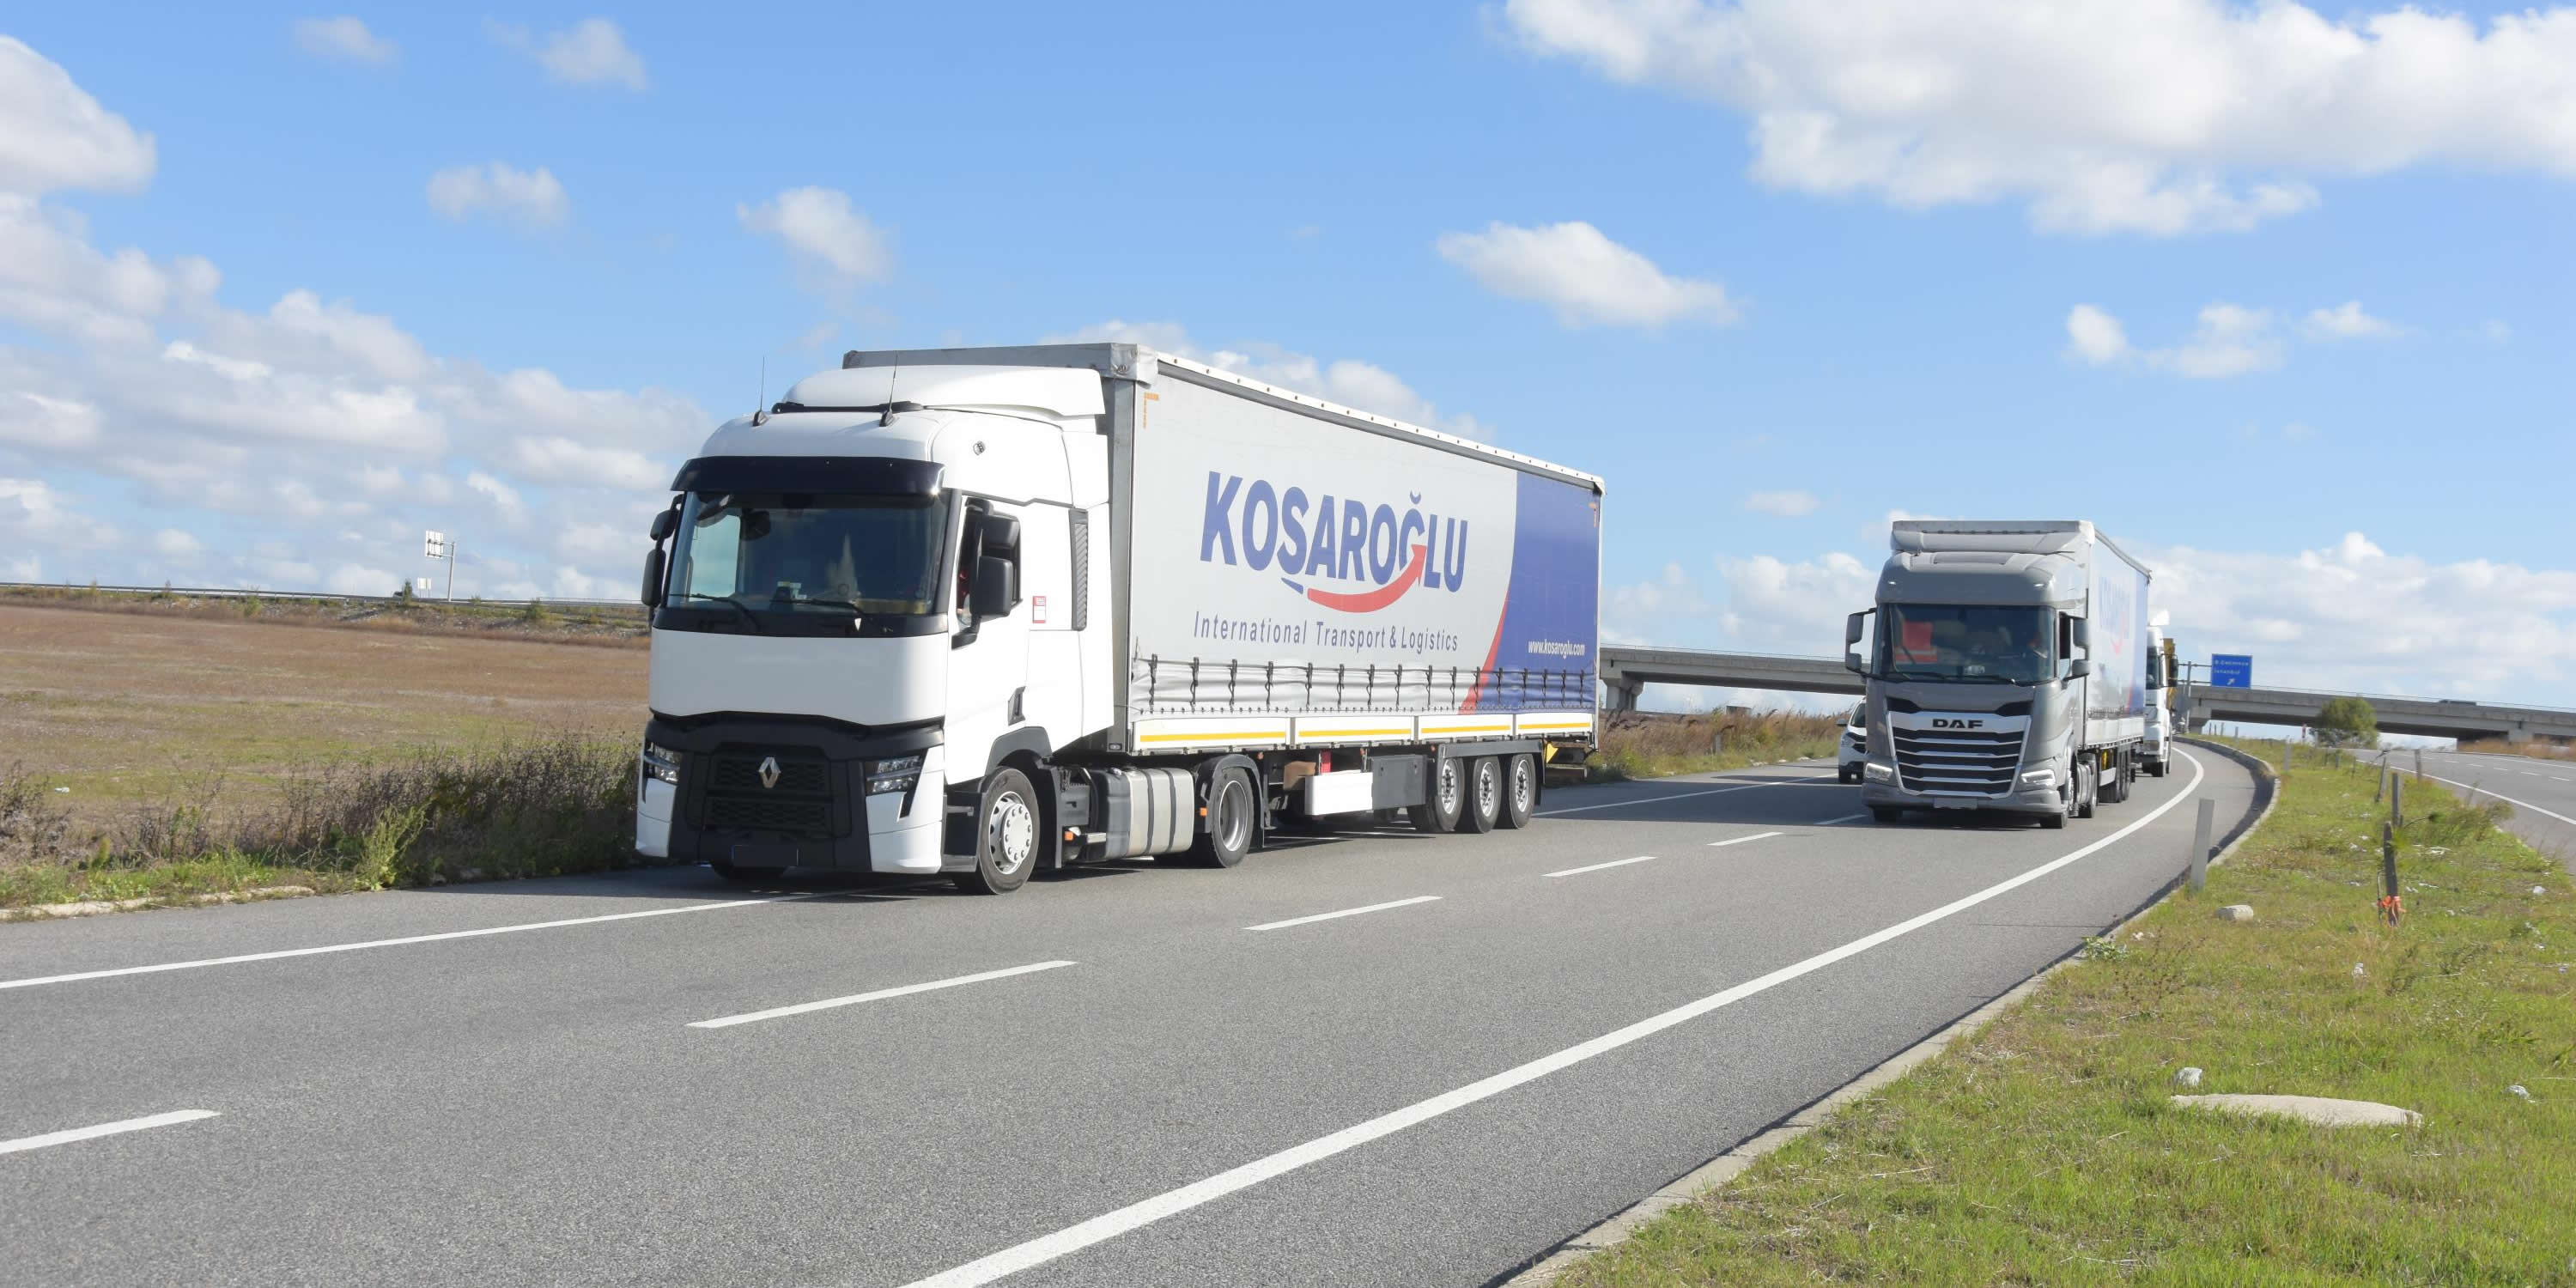 Koşaroğlu International Transport & Logistics